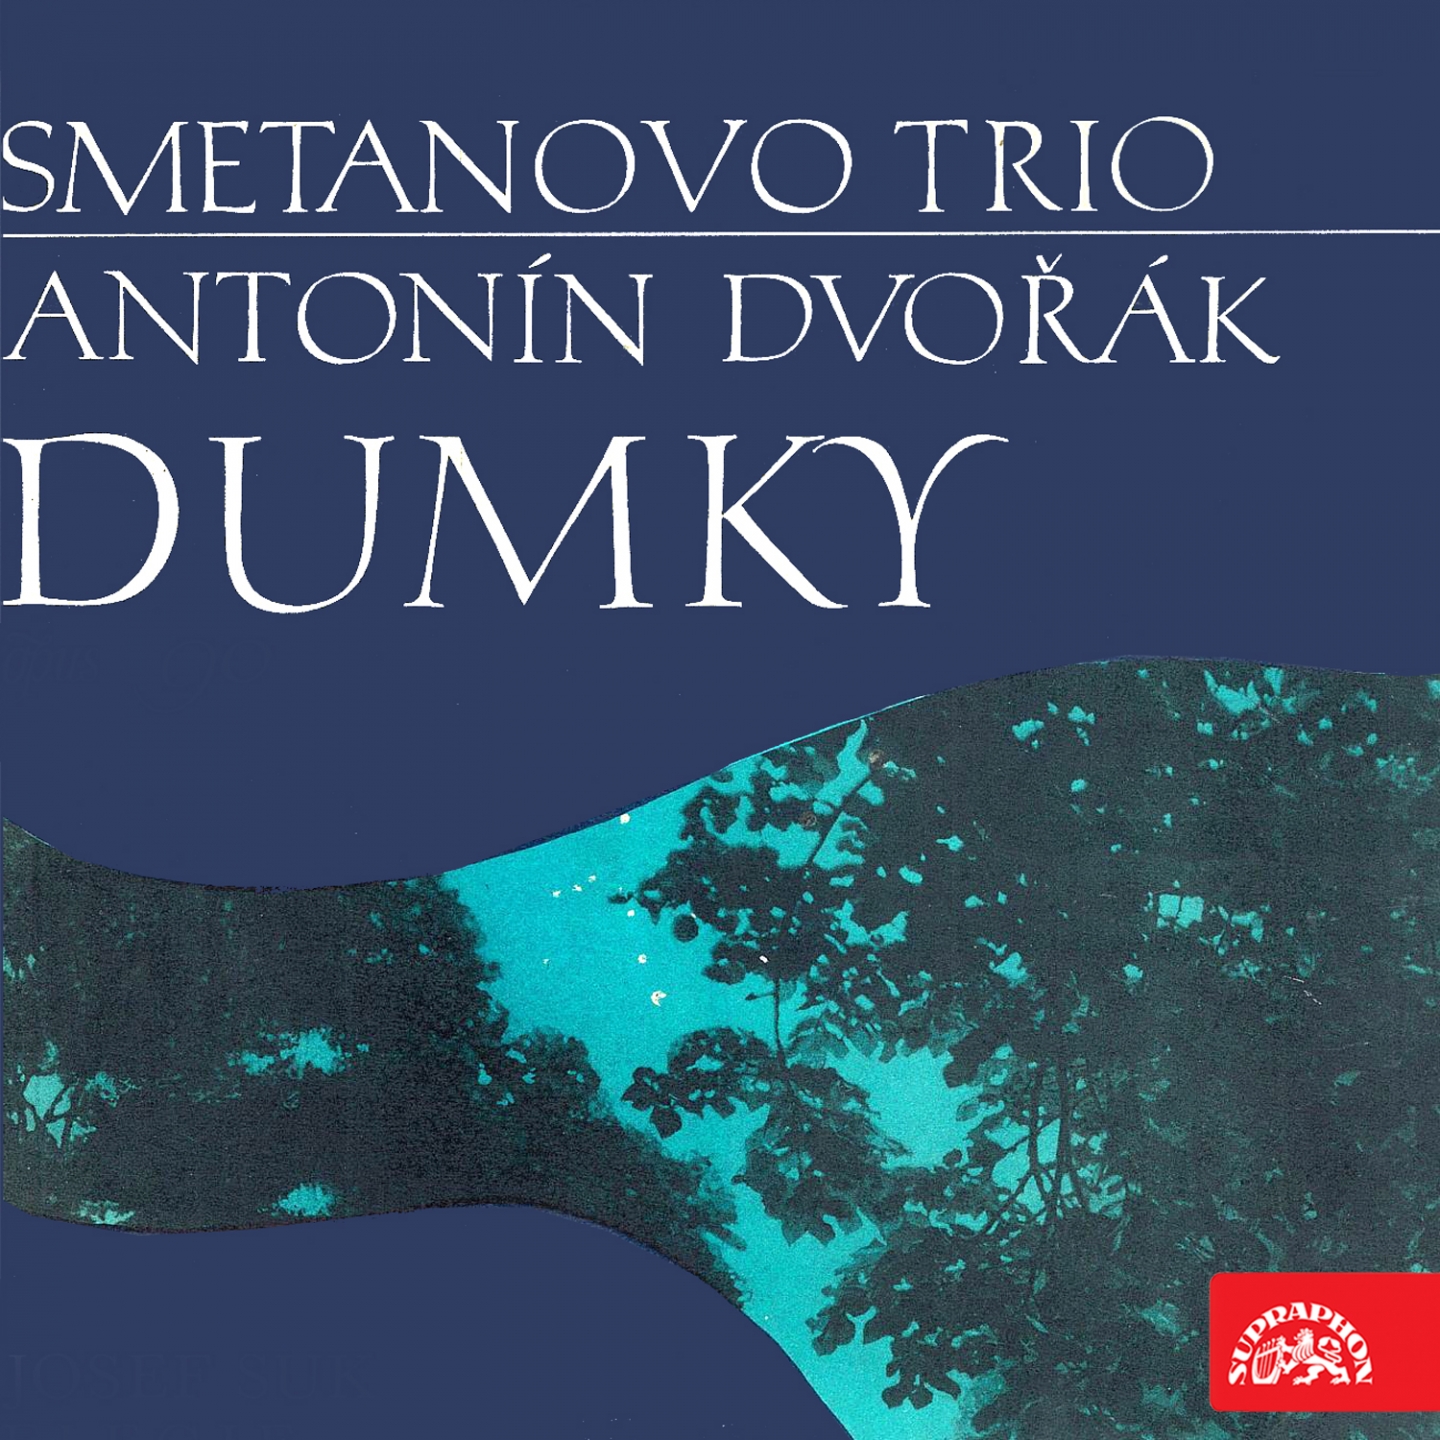 Piano Trio No. 4 in E Minor, Op. 90, B. 166 "Dumky": IV. Andante moderato